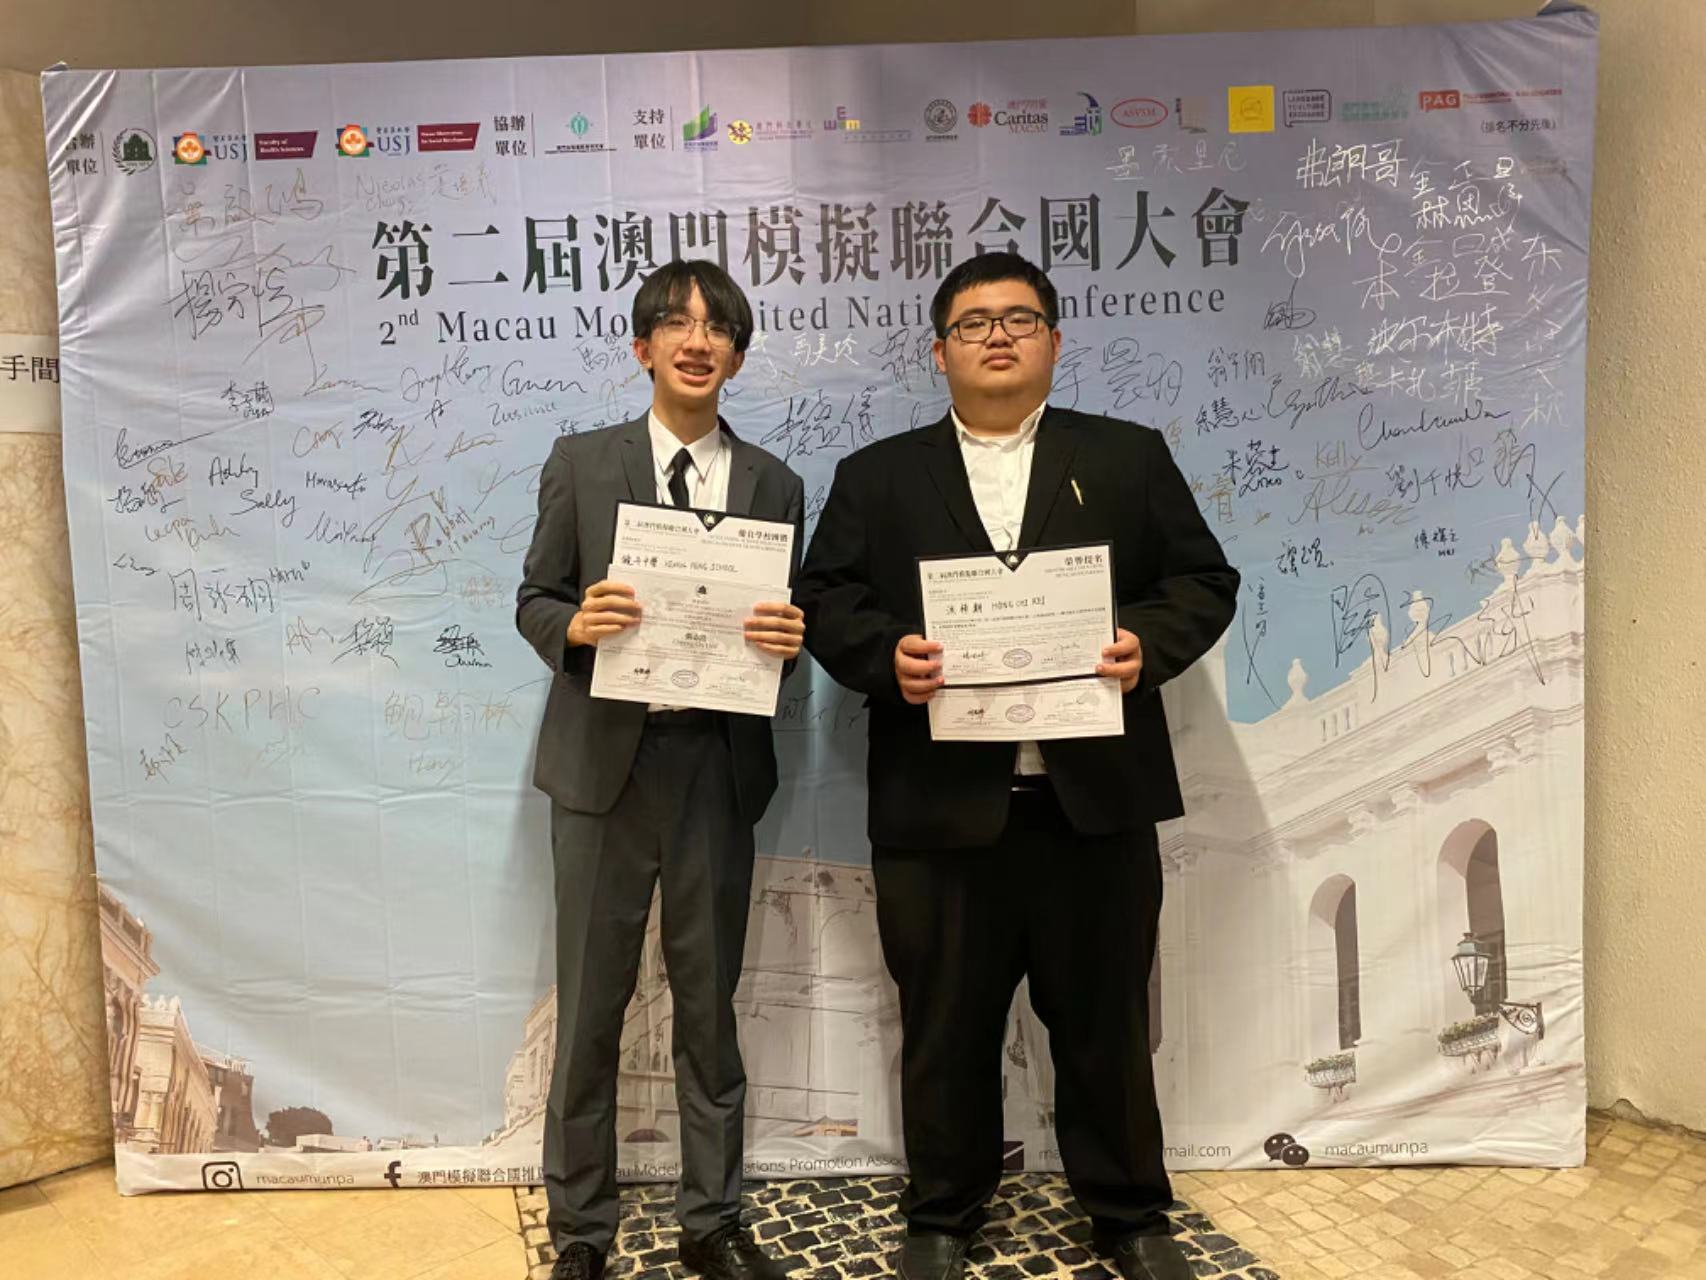 張志浩同學及洪梓期同學獲得榮譽提名獎